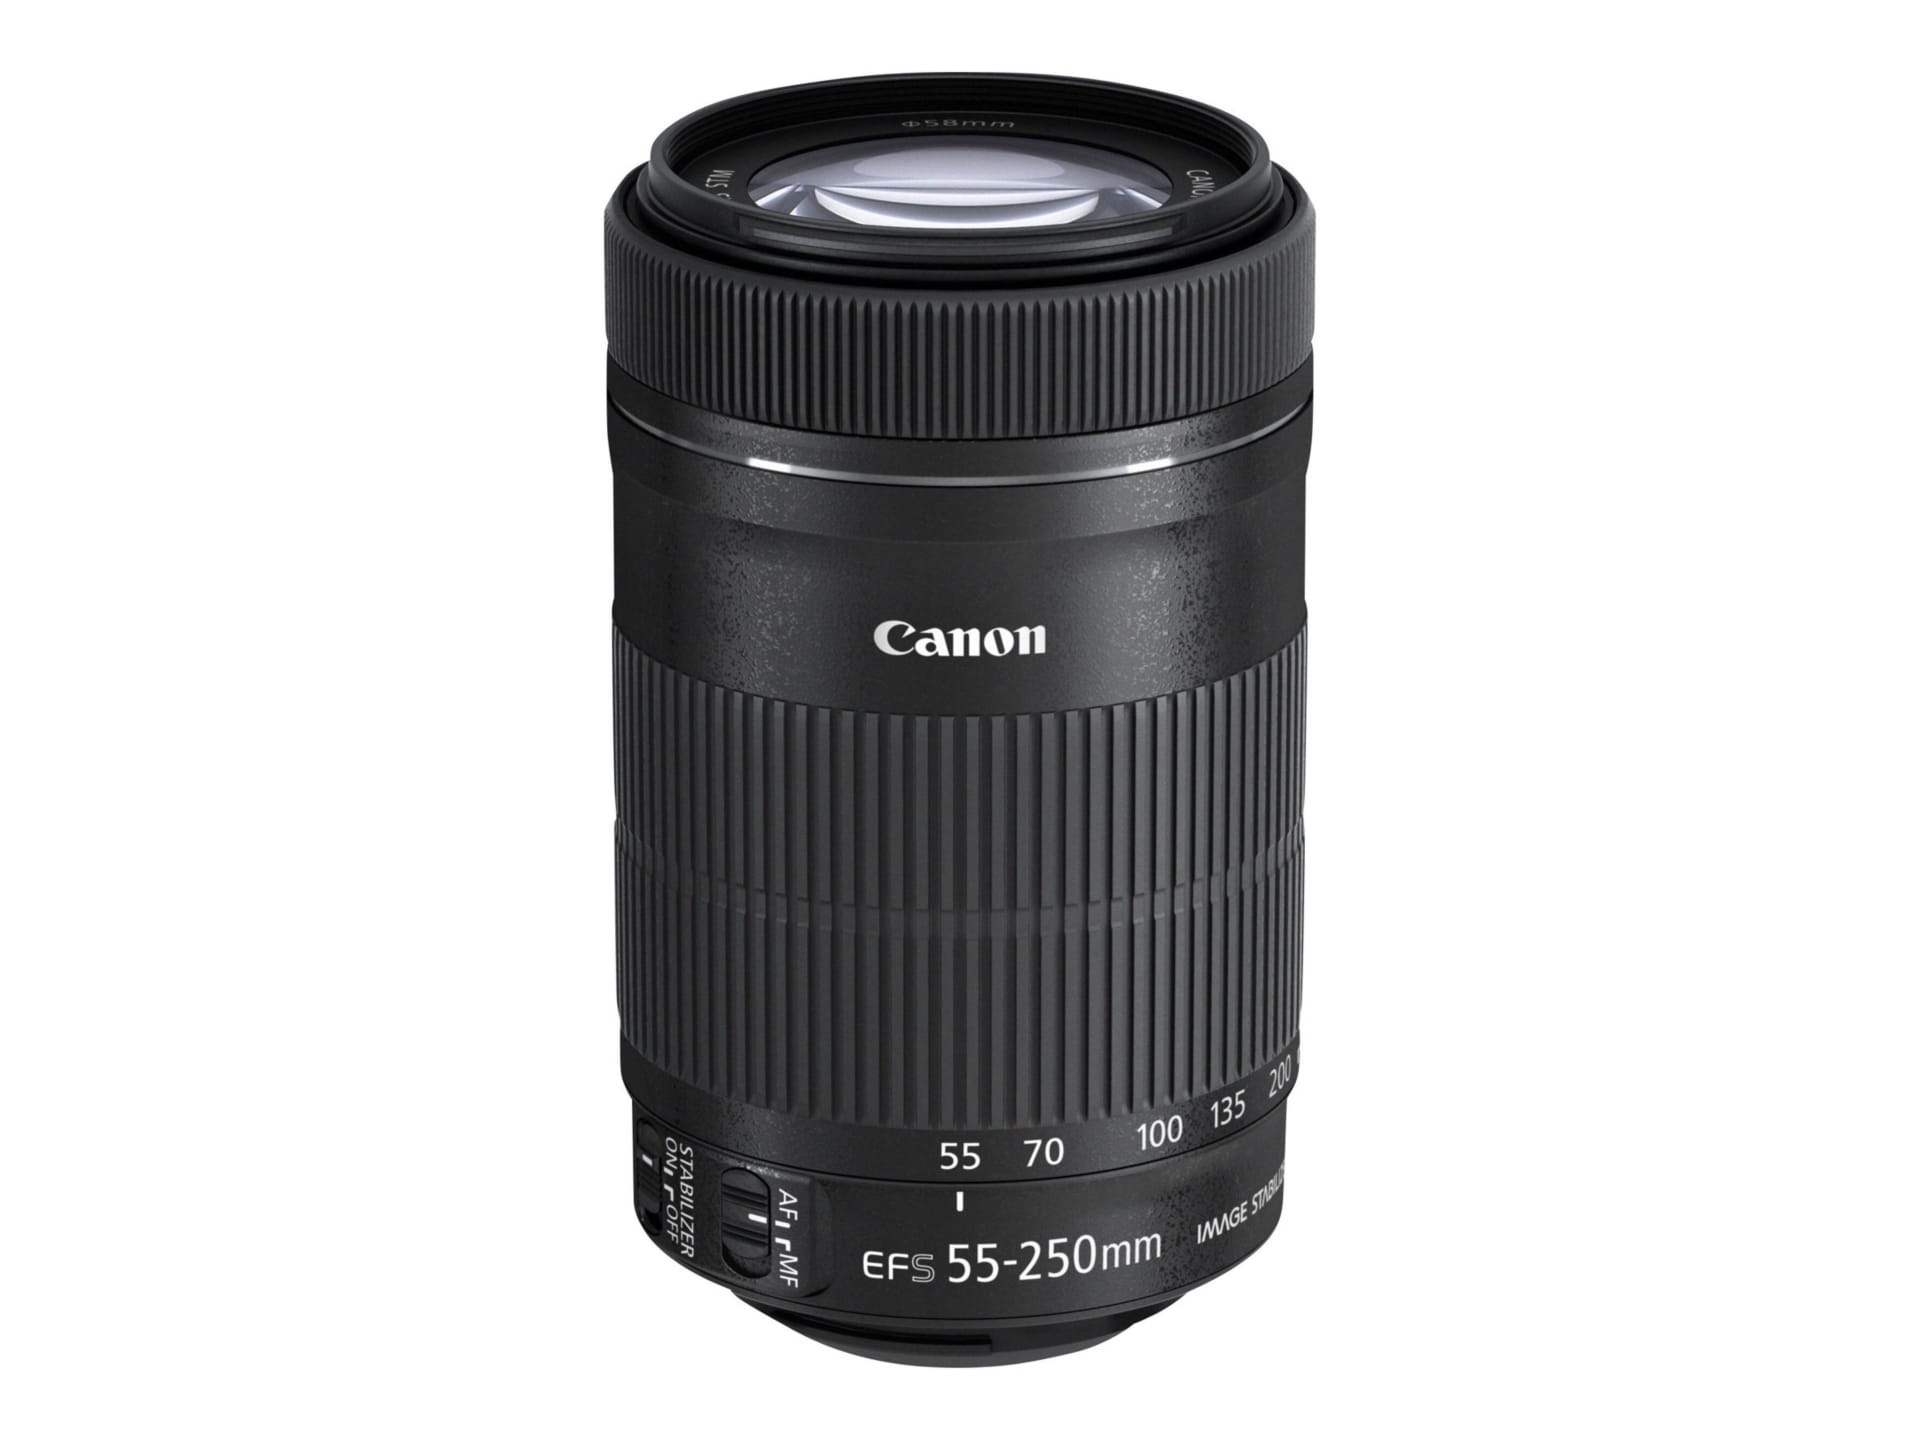 Canon EF-S telephoto zoom lens - 55 mm - 250 mm - 8546B002 - Cameras & Video Cameras - CDW.com